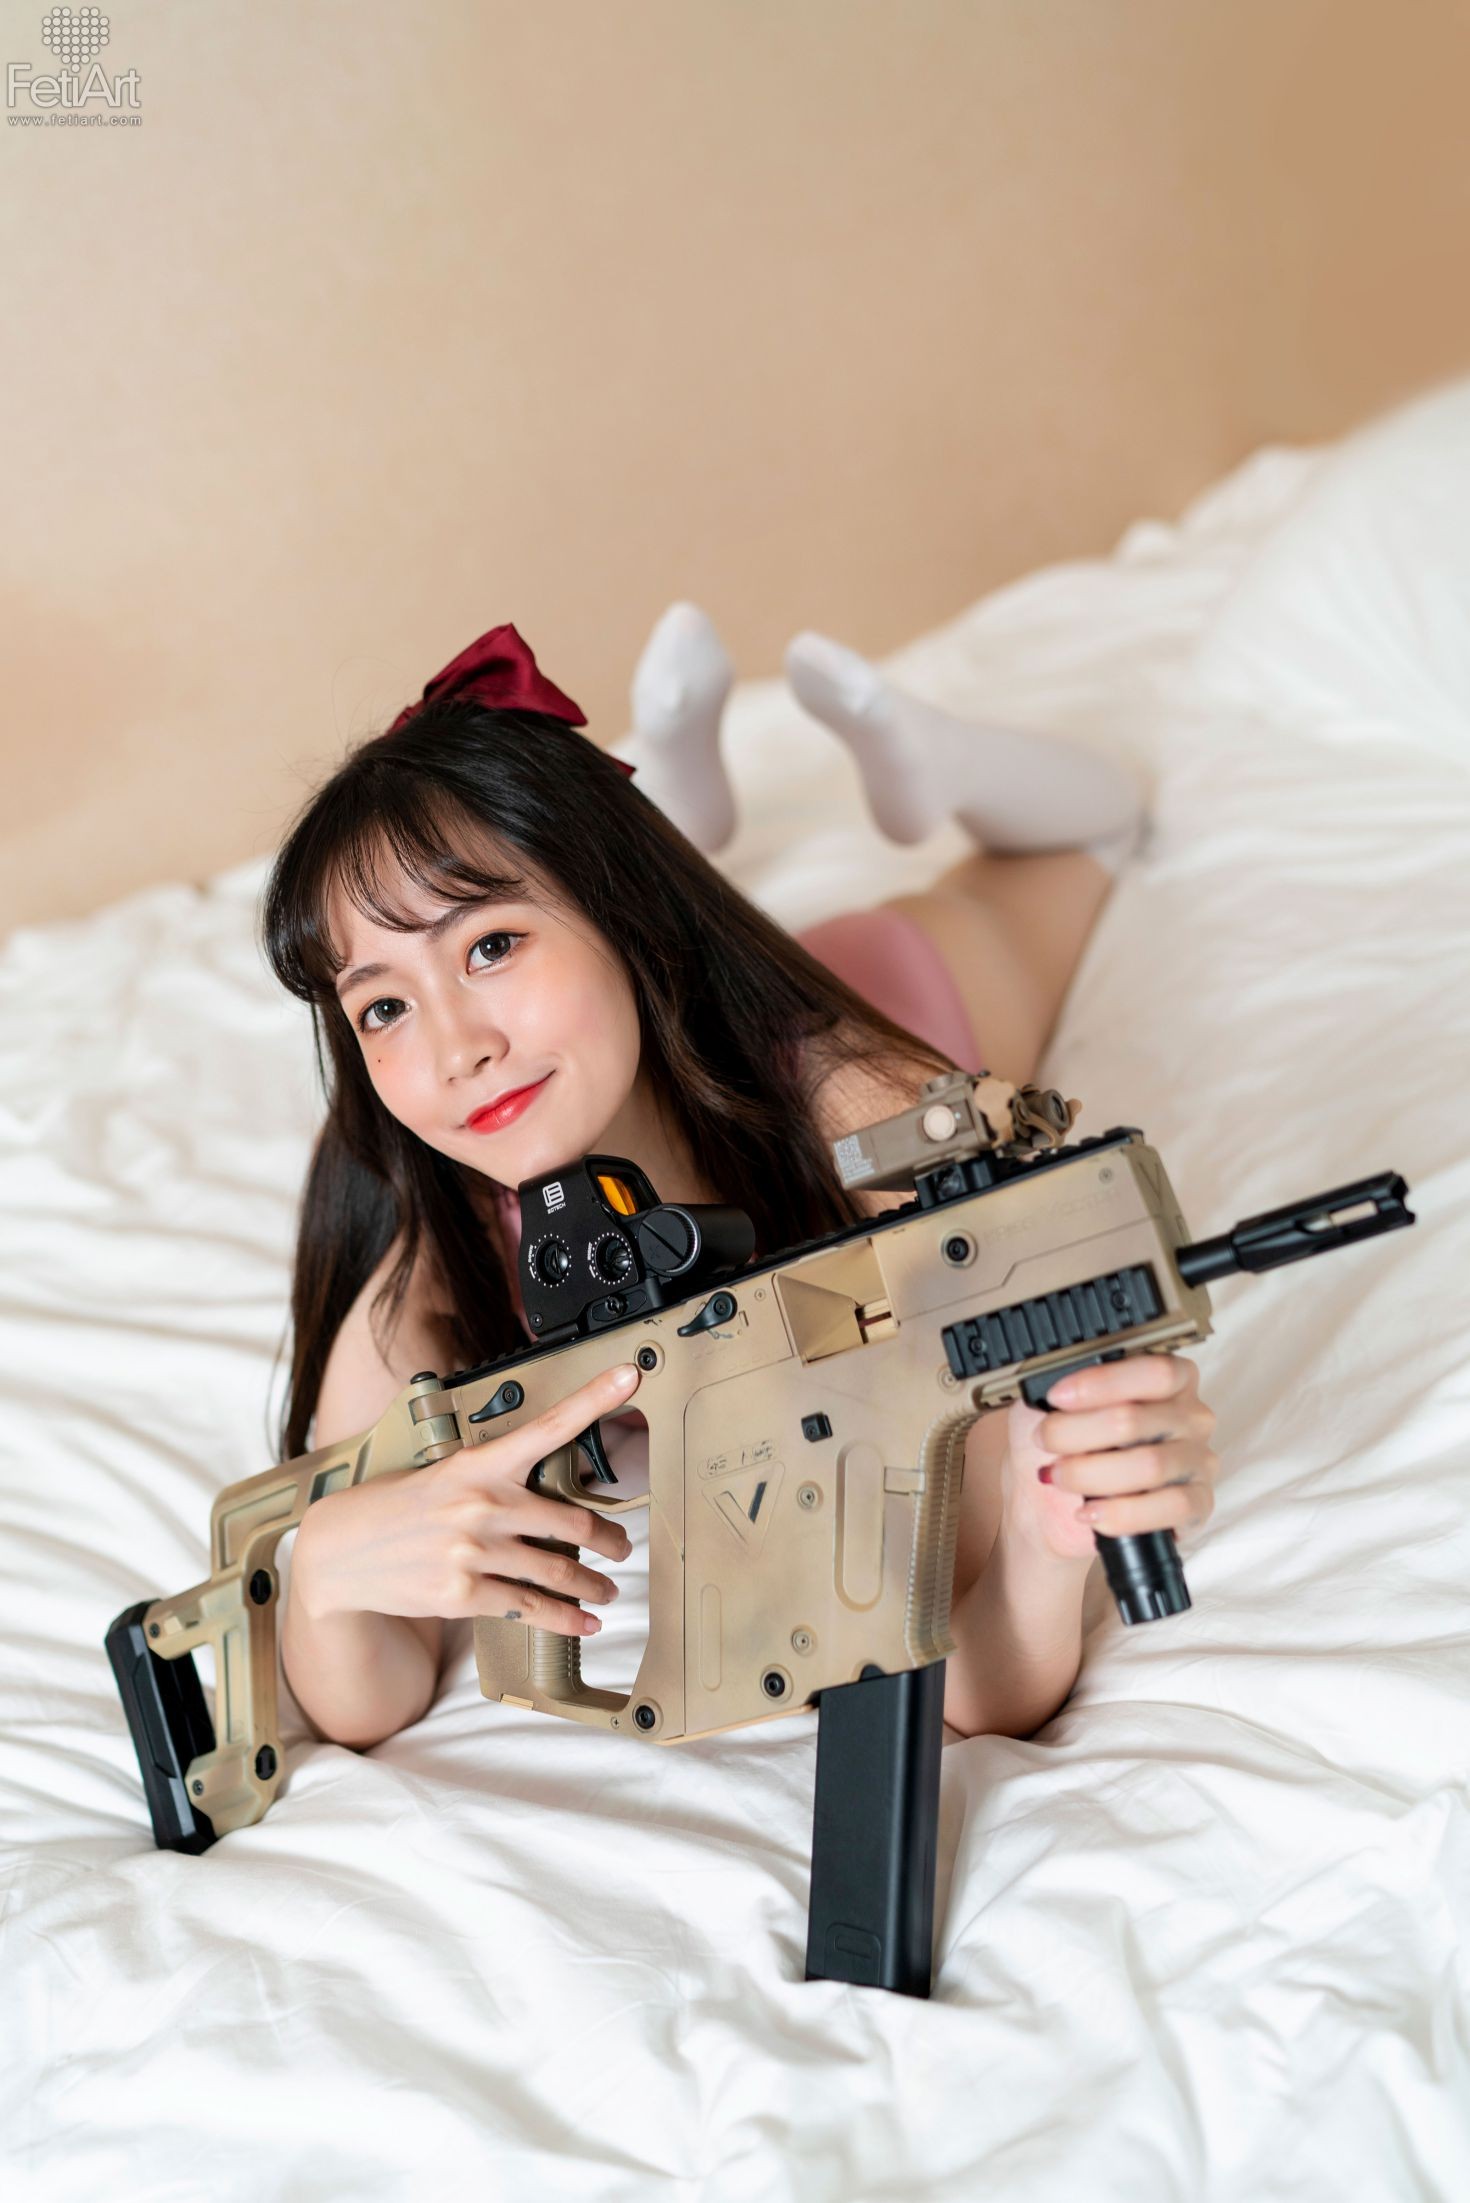 FetiArt尚物集 No.019 Gunslinger Girl MODEL Mmi (21)